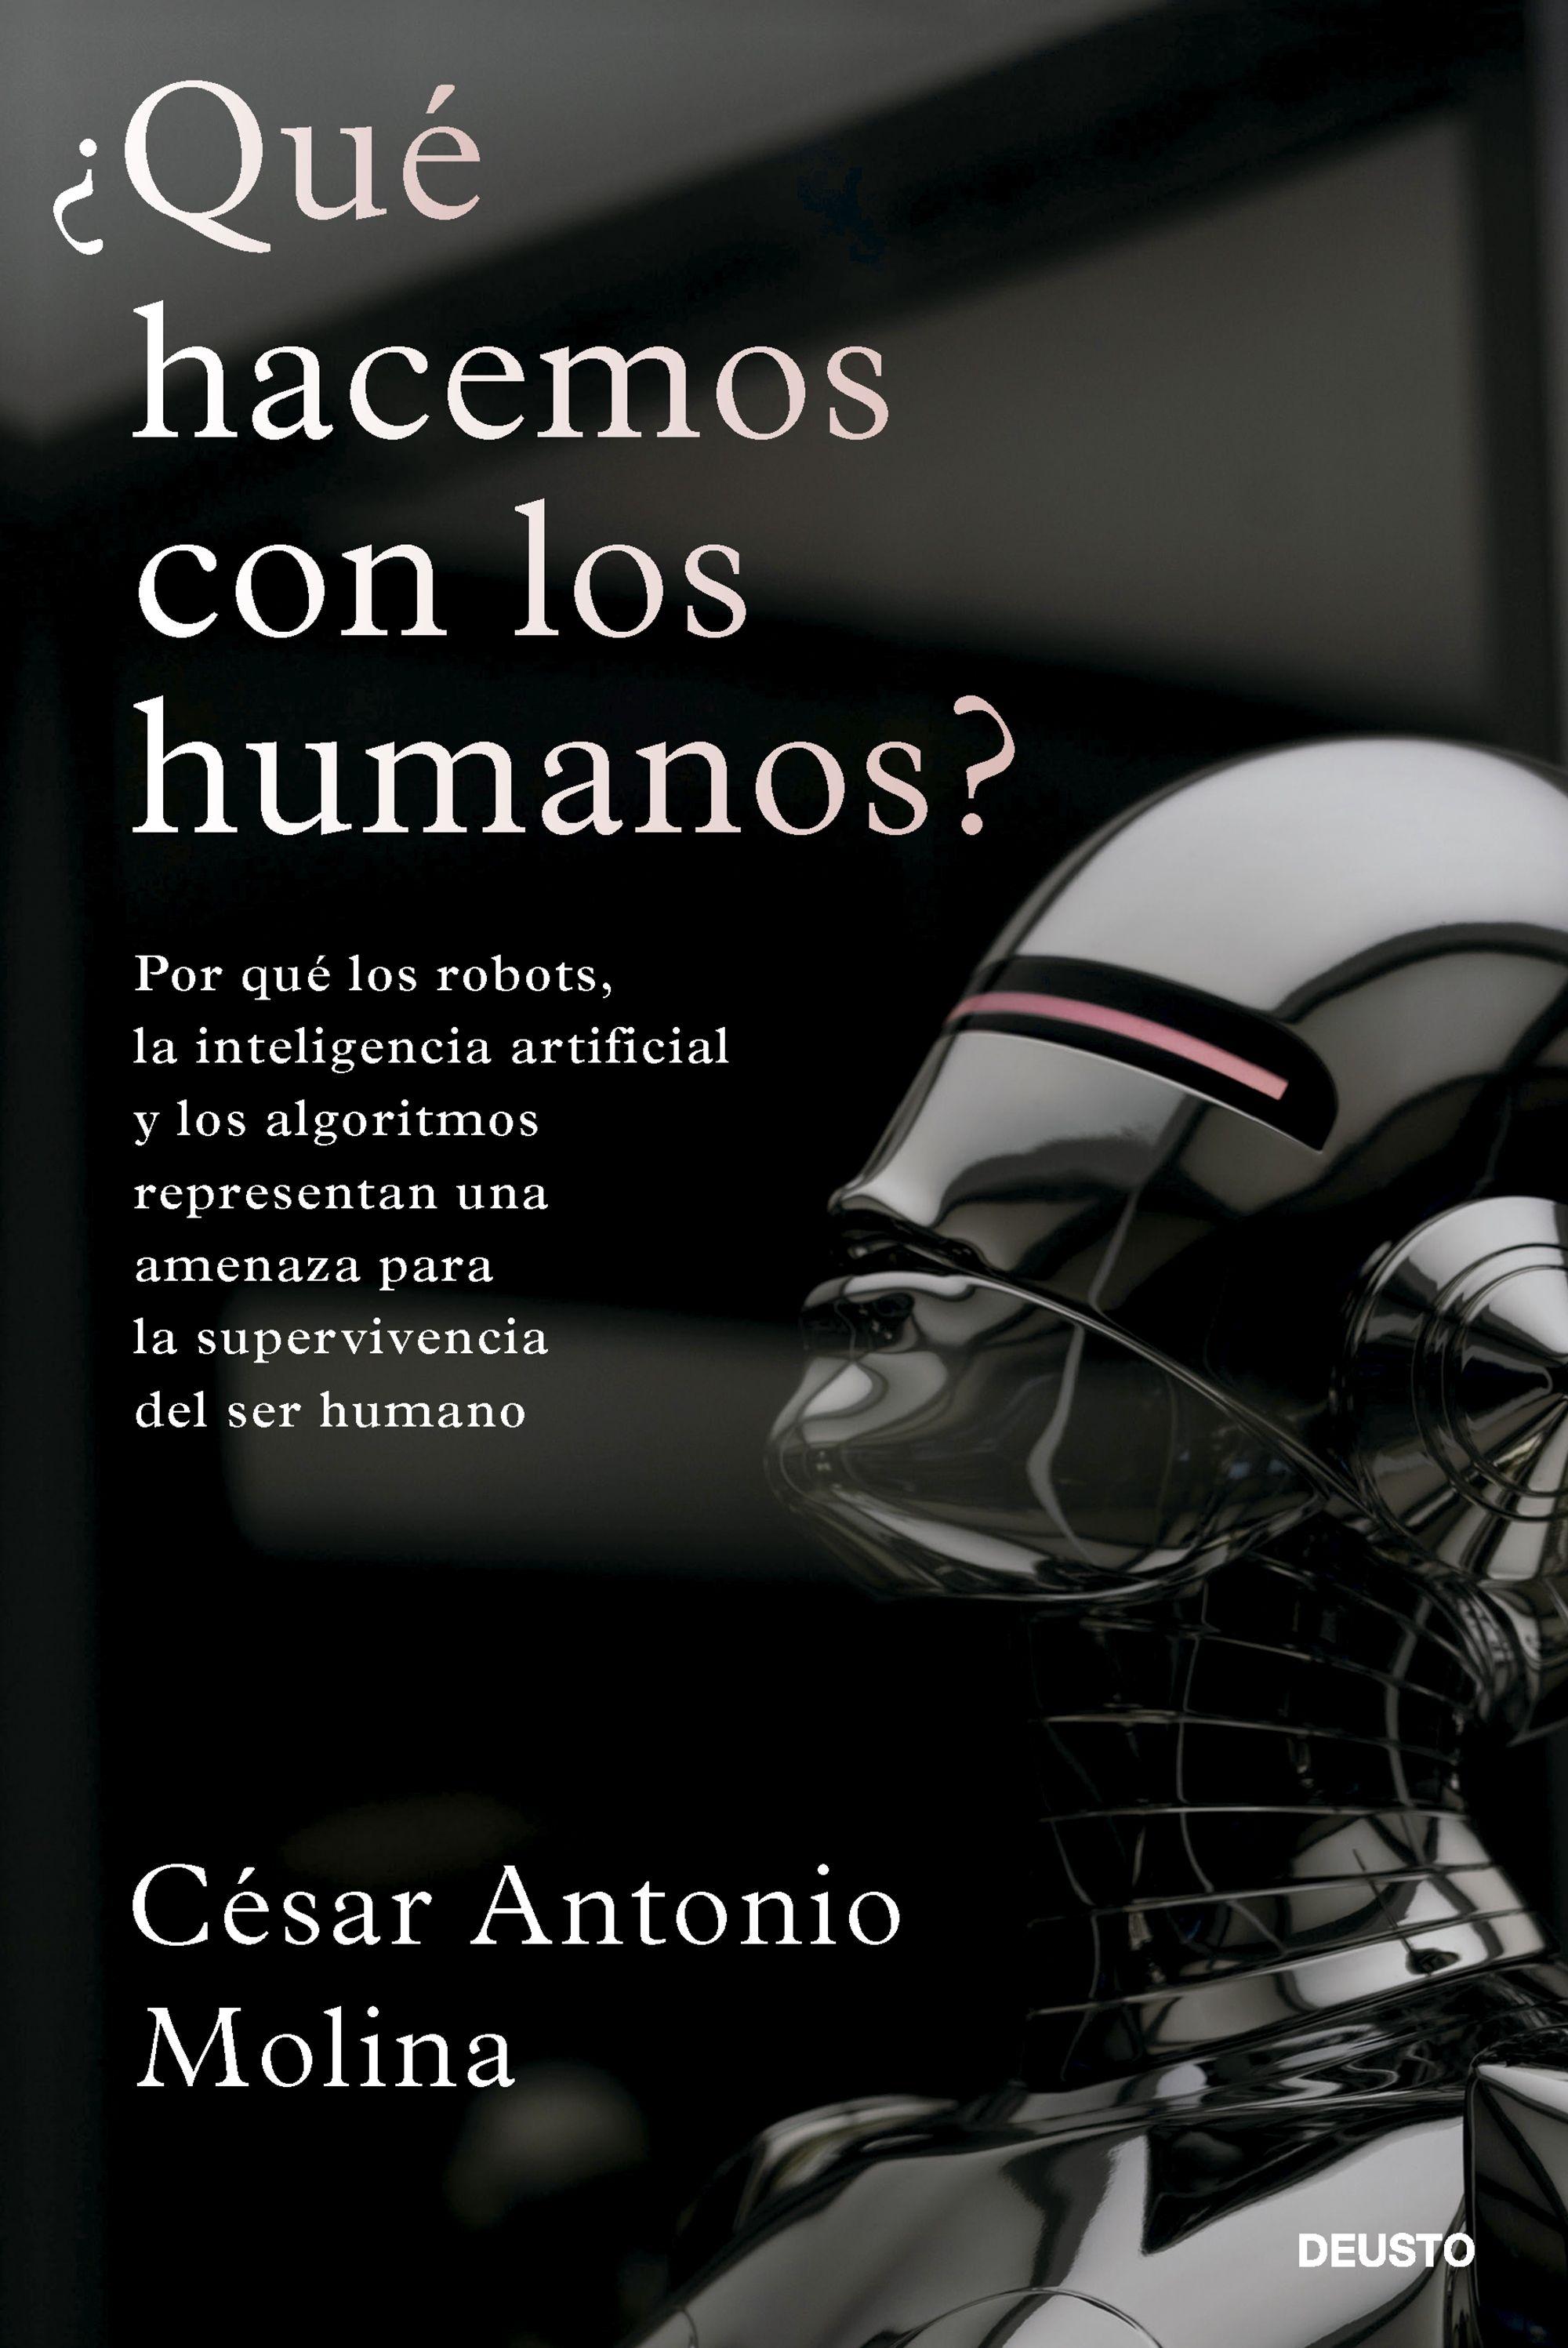 ¿Qué Hacemos con los Humanos? "Por que los Robots, la Inteligencia Artificial y los Algoritmos Represen". 